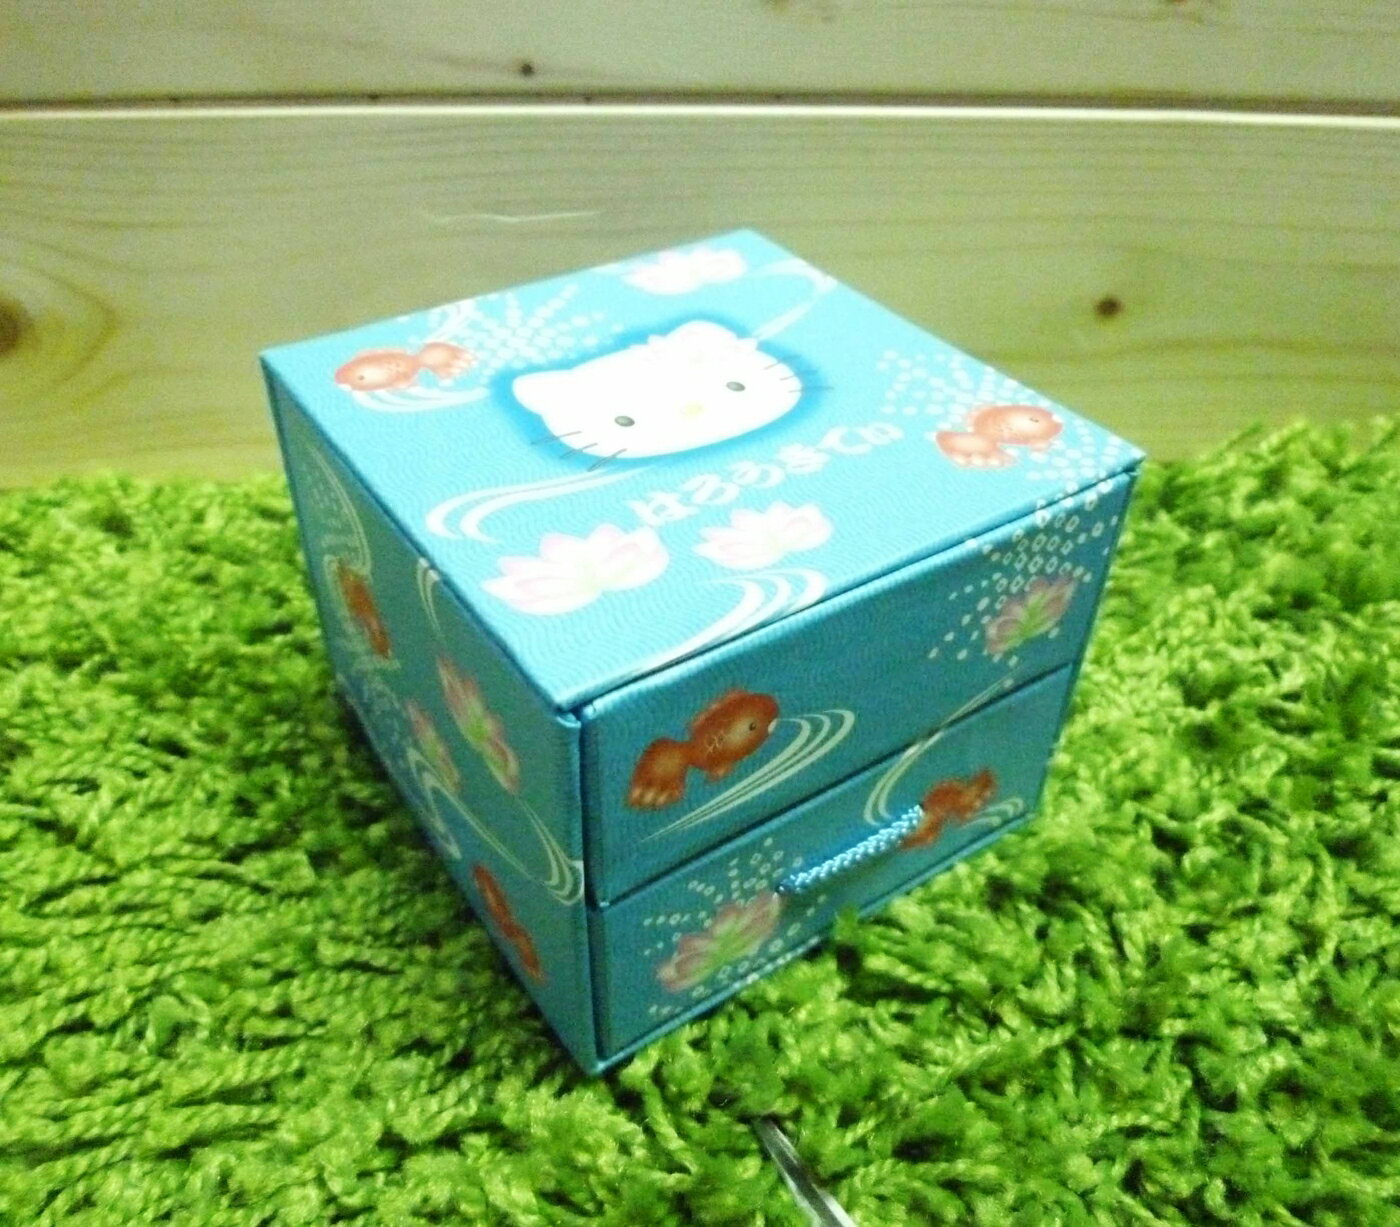 【震撼精品百貨】Hello Kitty 凱蒂貓 便條紙附整理盒-藍色【共1款】 震撼日式精品百貨